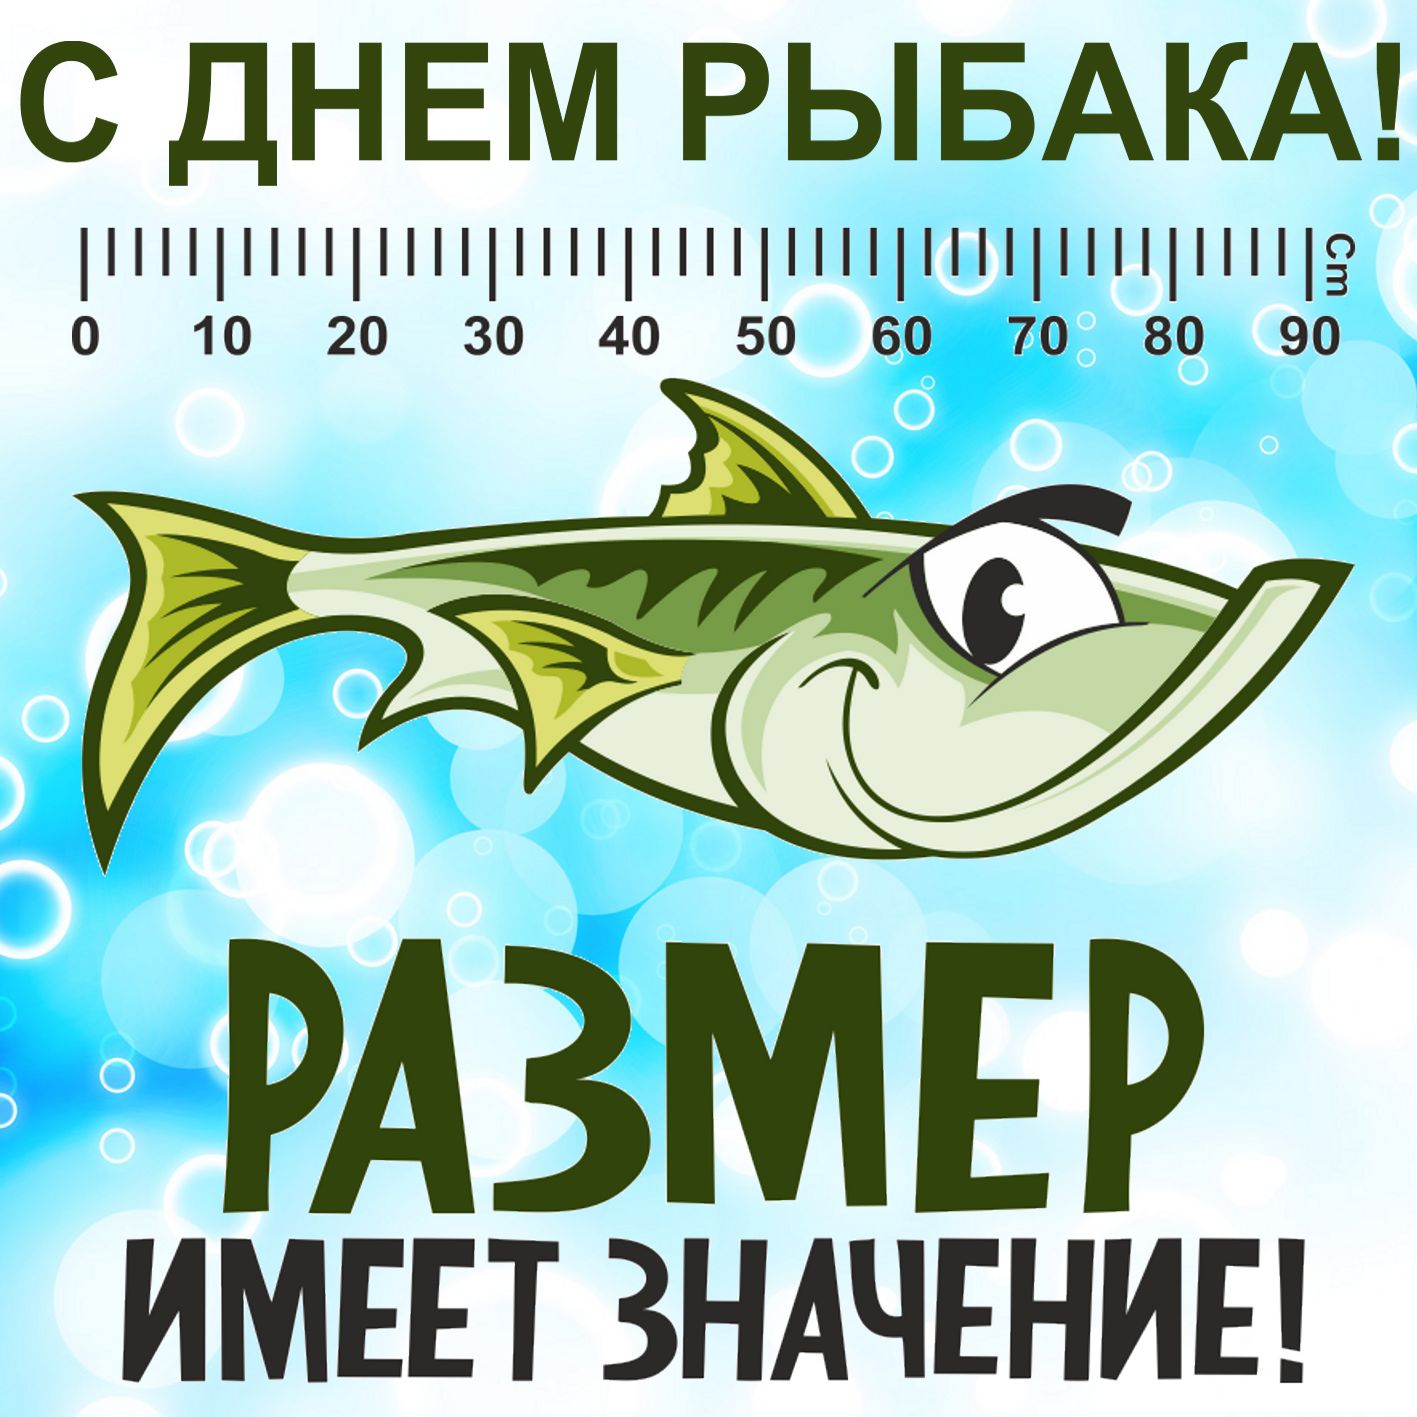 Открытка на День рыбака - в рыбке размер имеет значение